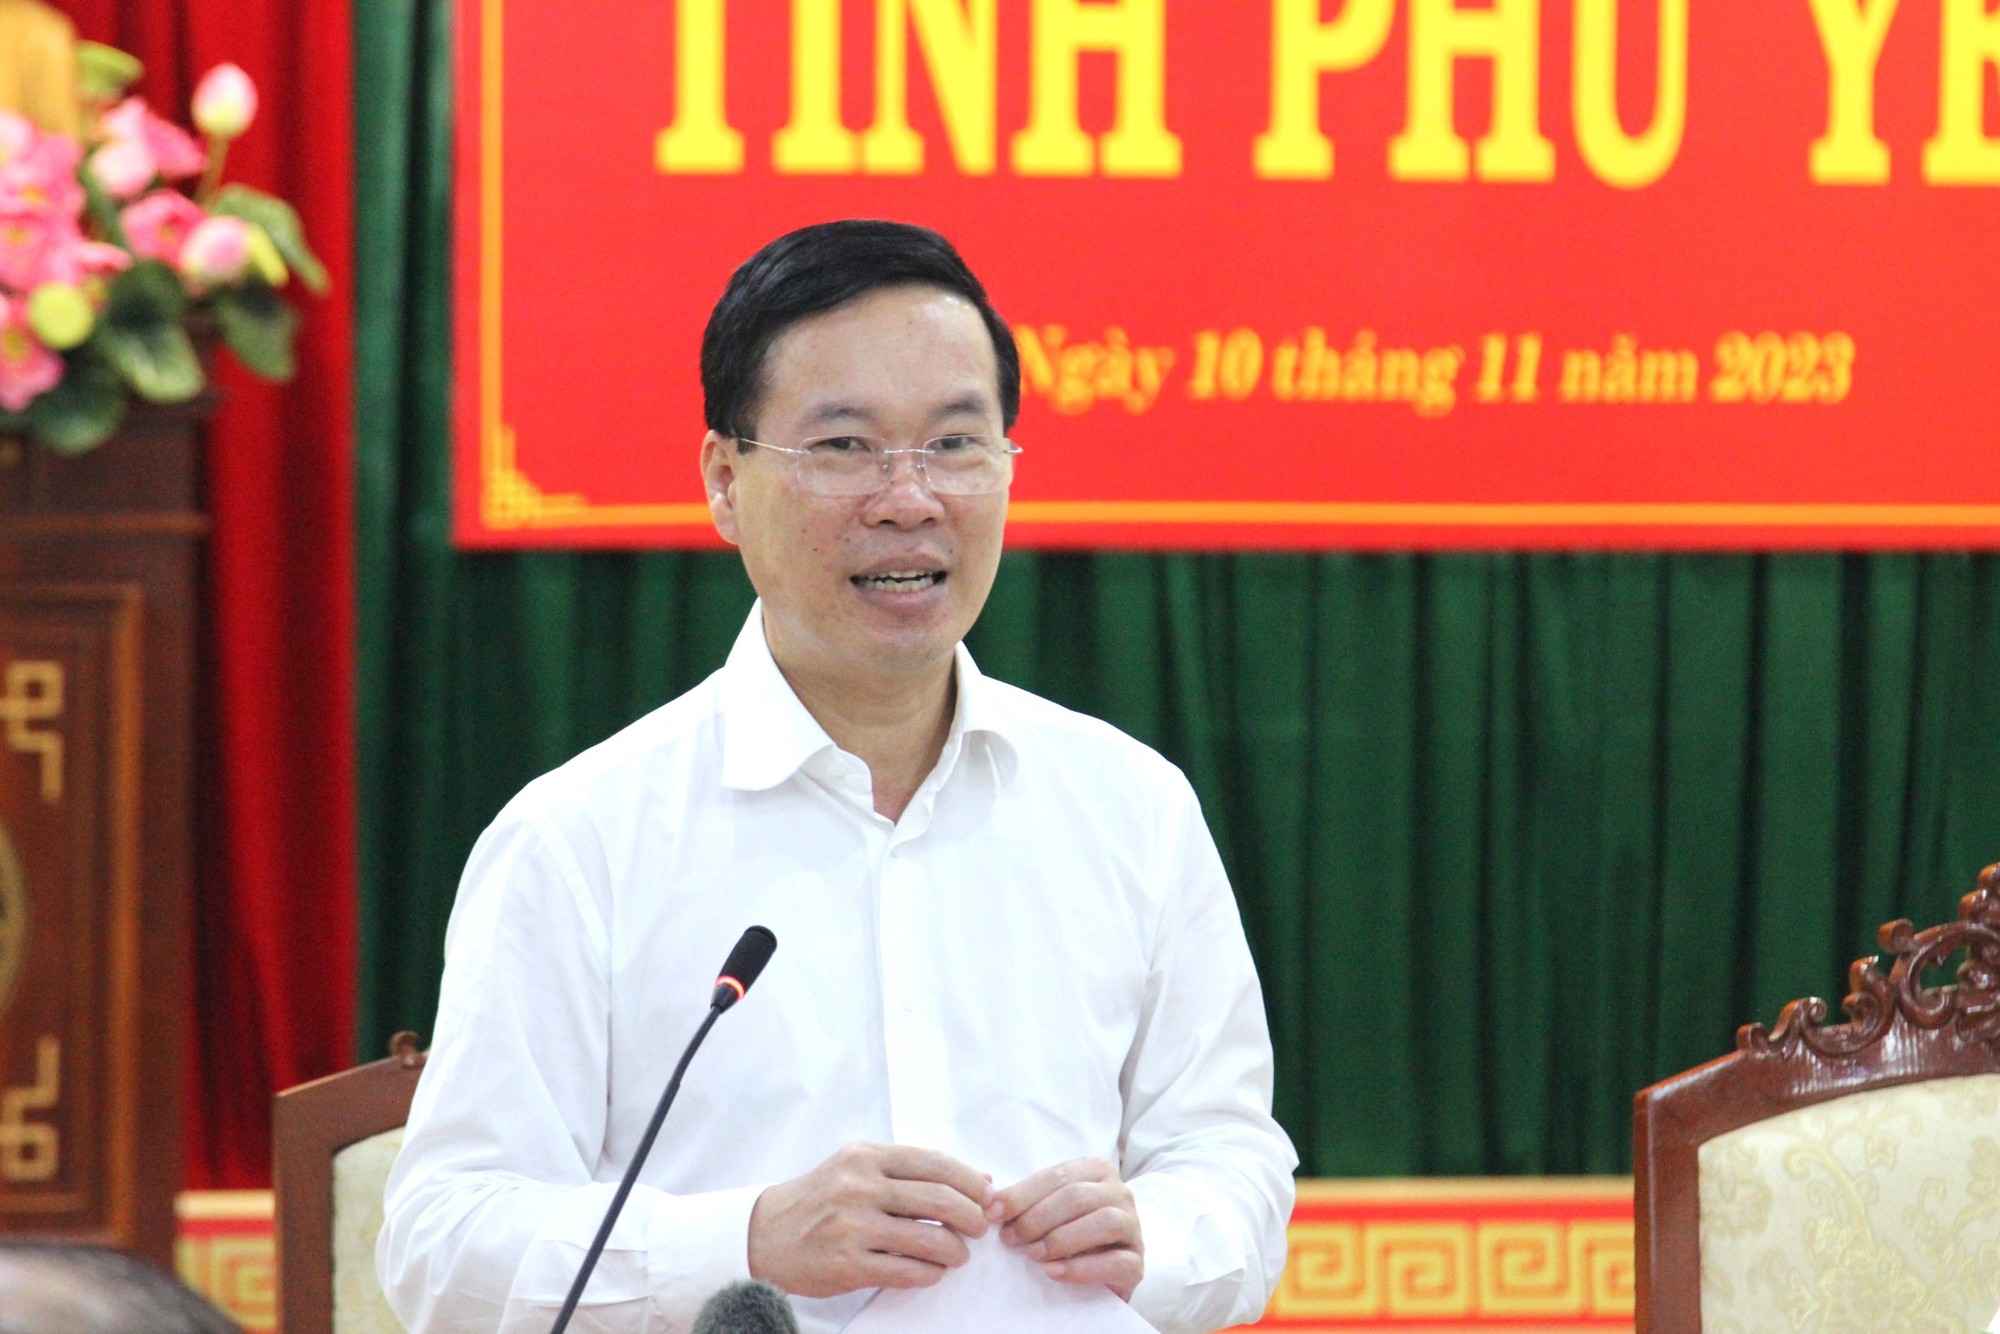 Chủ tịch nước yêu cầu Phú Yên xây dựng đội ngũ cán bộ vì dân vì nước - Ảnh 1.